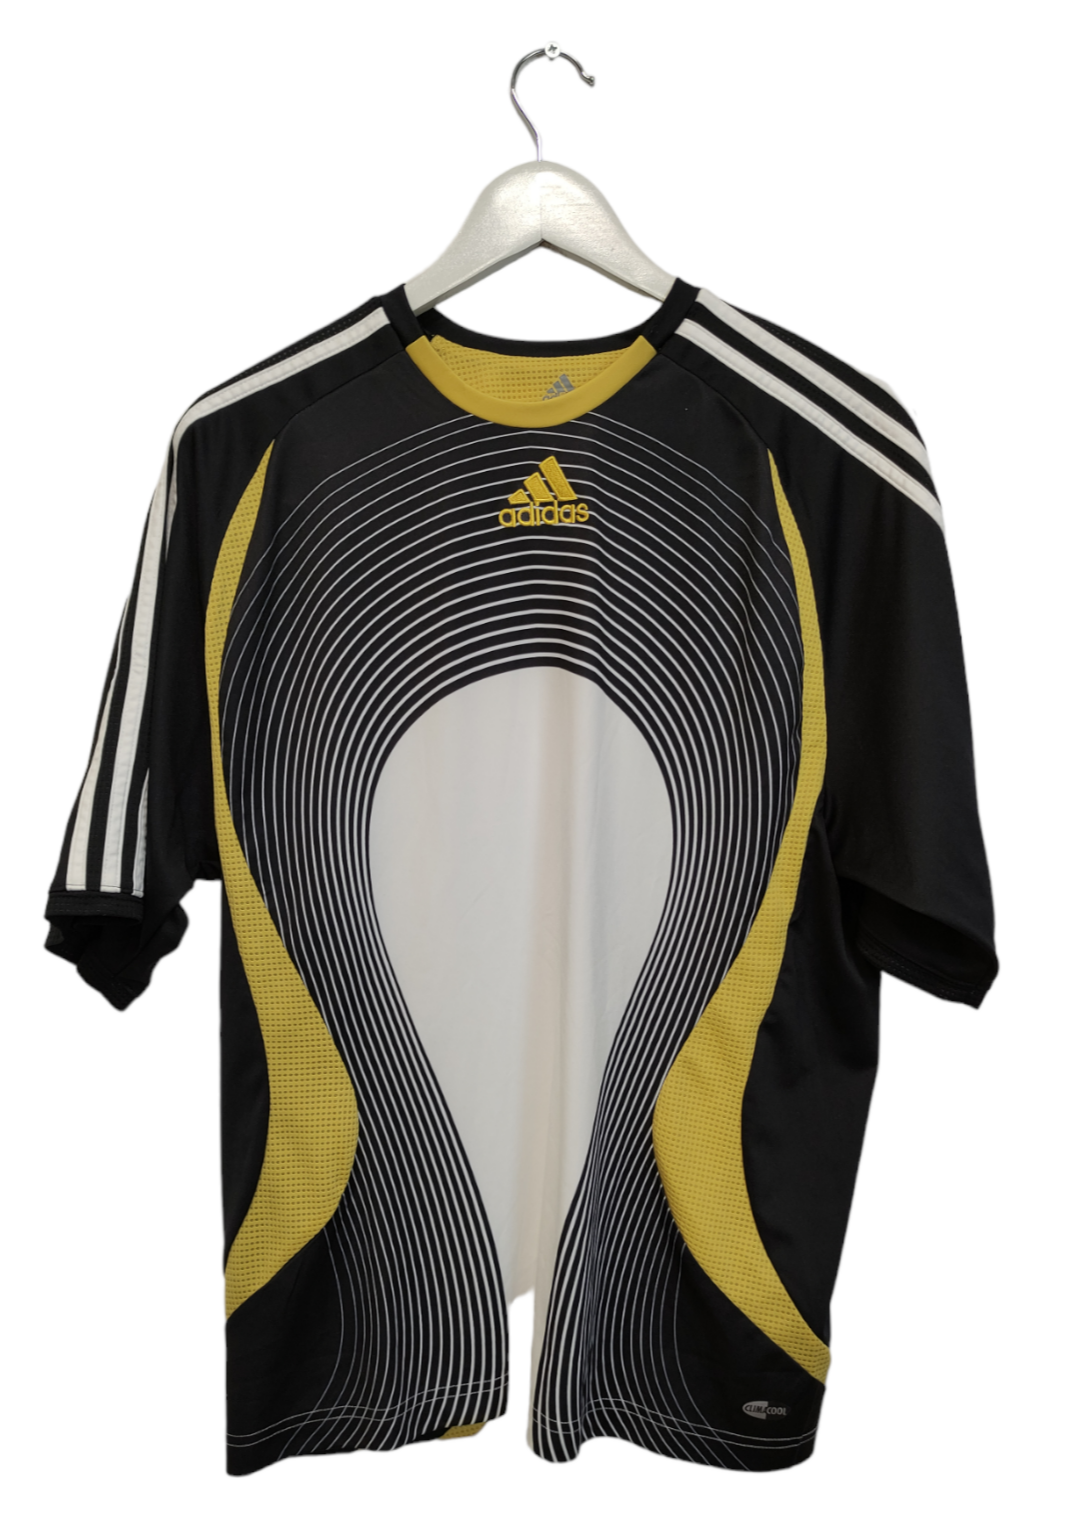 Αθλητική Ανδρική Μπλούζα - T-Shirt ADIDAS σε Μαύρο - Χρυσό Χρώμα (Medium)